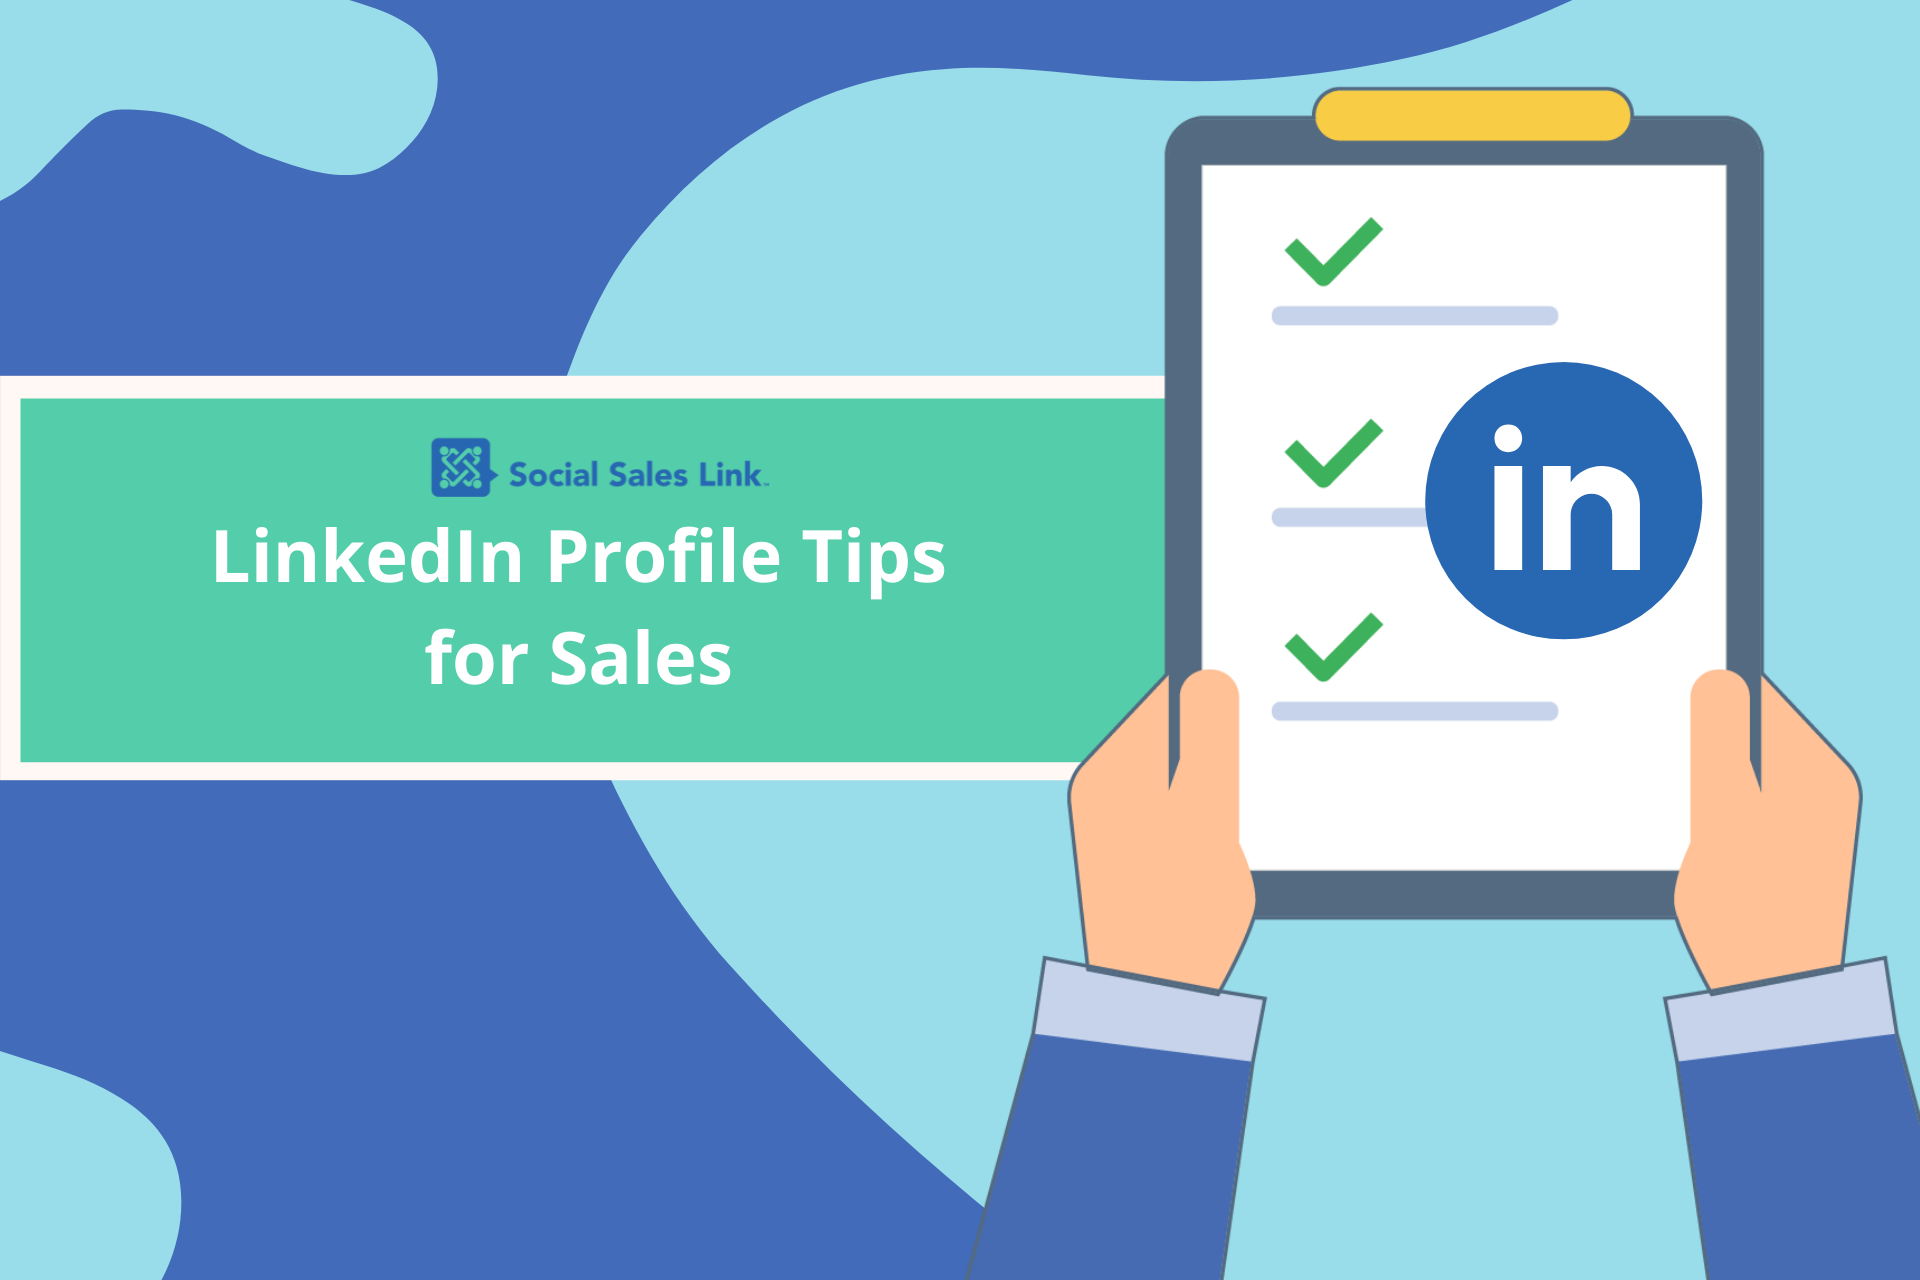 Making Sales Social Live Episode # 2- LinkedIn Profile Tips for Sales ...